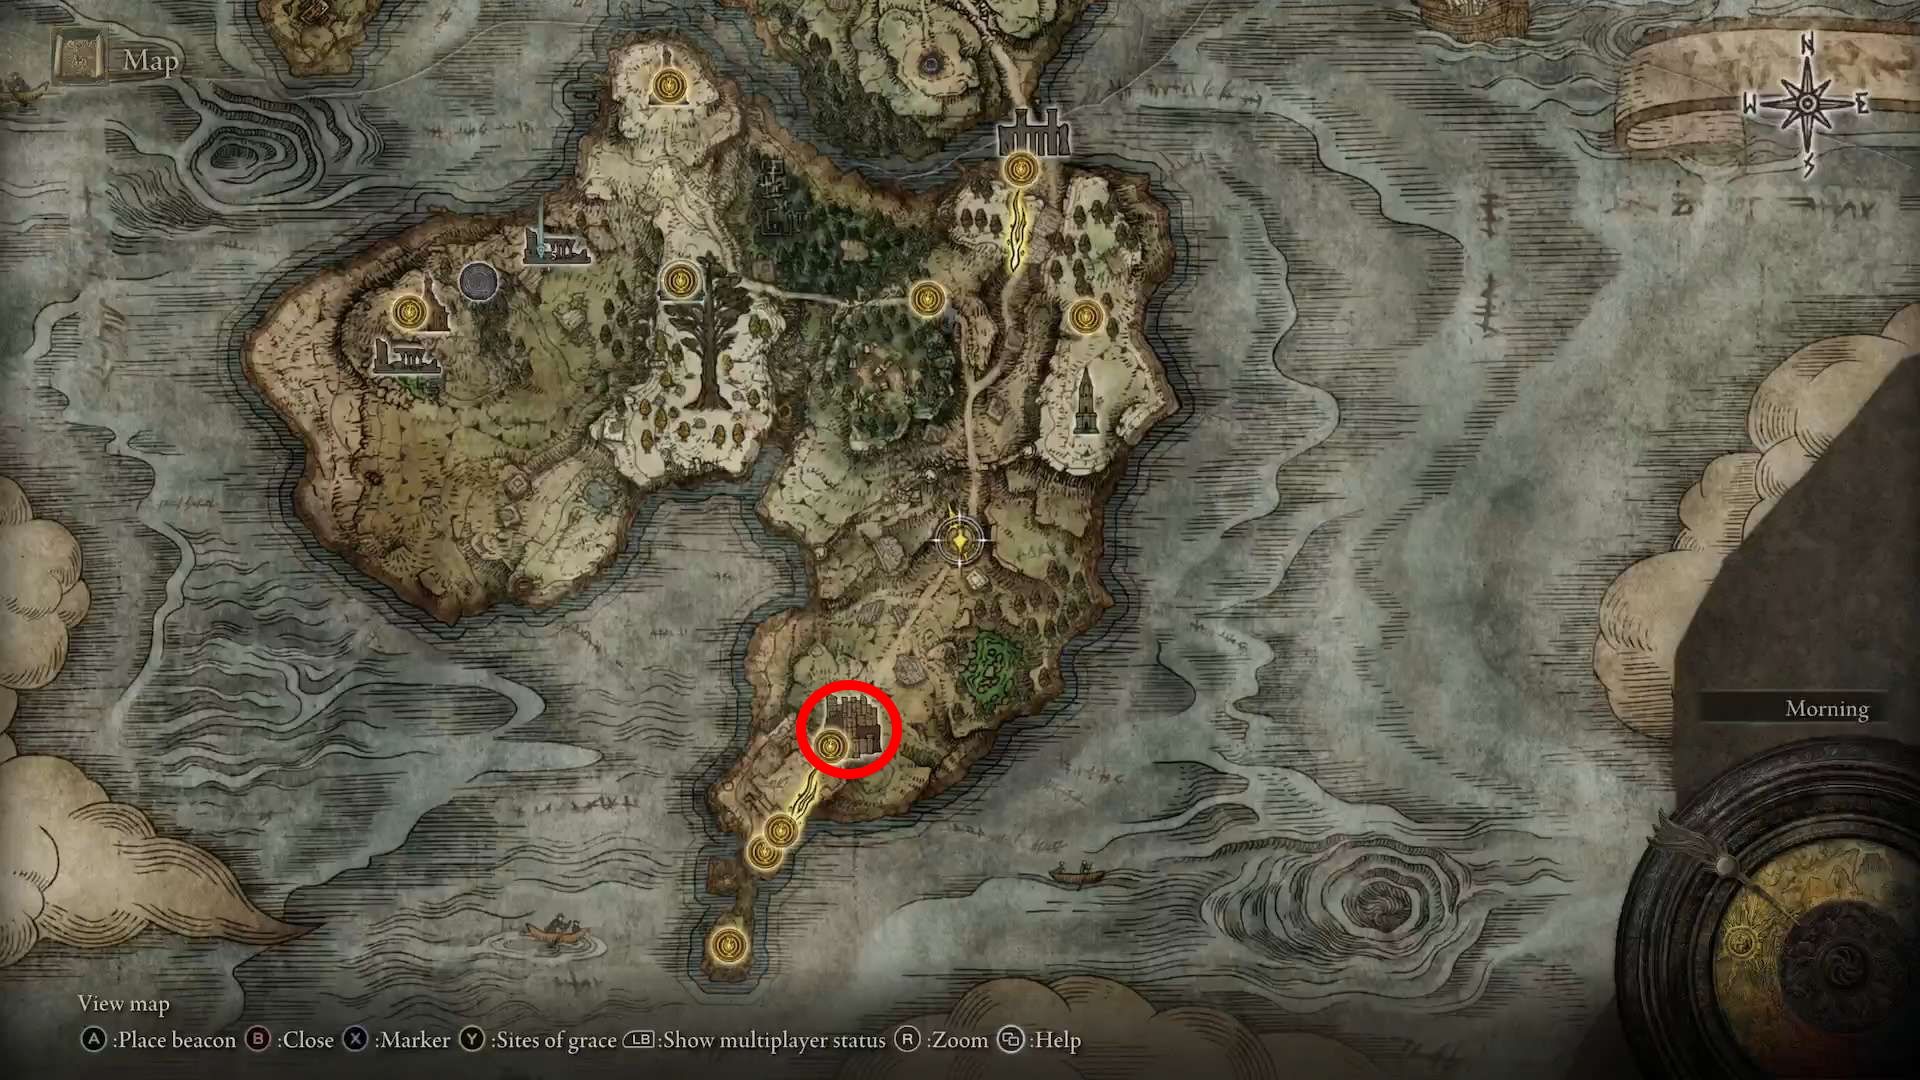 Elden Ring, Castle Morne Shown On The Map